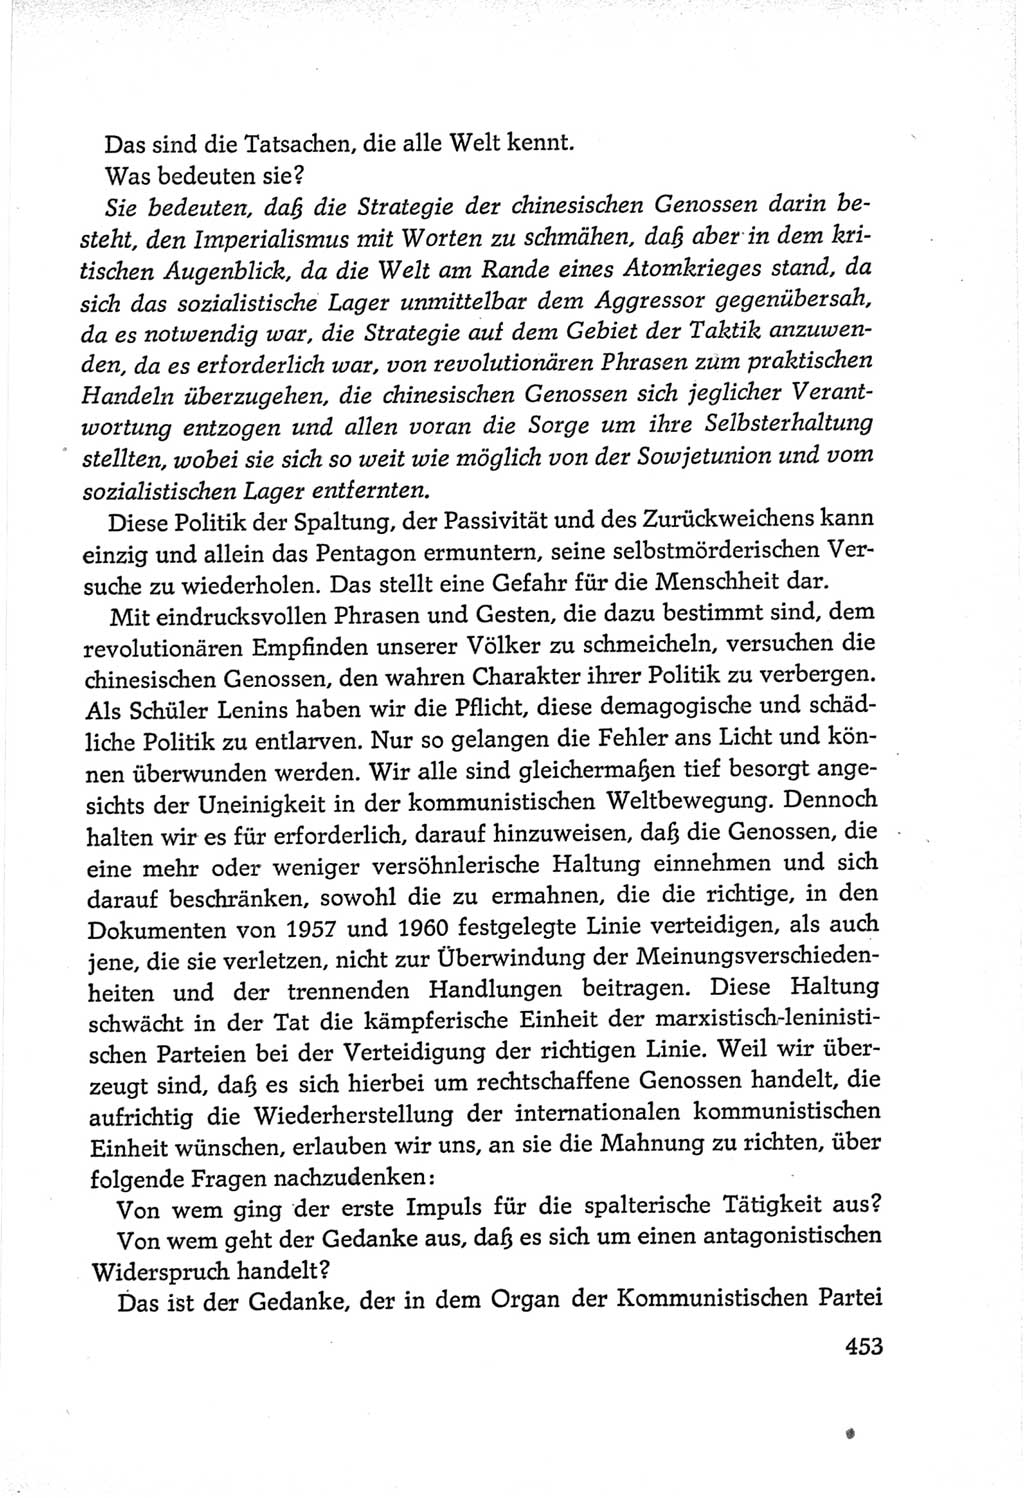 Protokoll der Verhandlungen des Ⅵ. Parteitages der Sozialistischen Einheitspartei Deutschlands (SED) [Deutsche Demokratische Republik (DDR)] 1963, Band Ⅱ, Seite 453 (Prot. Verh. Ⅵ. PT SED DDR 1963, Bd. Ⅱ, S. 453)